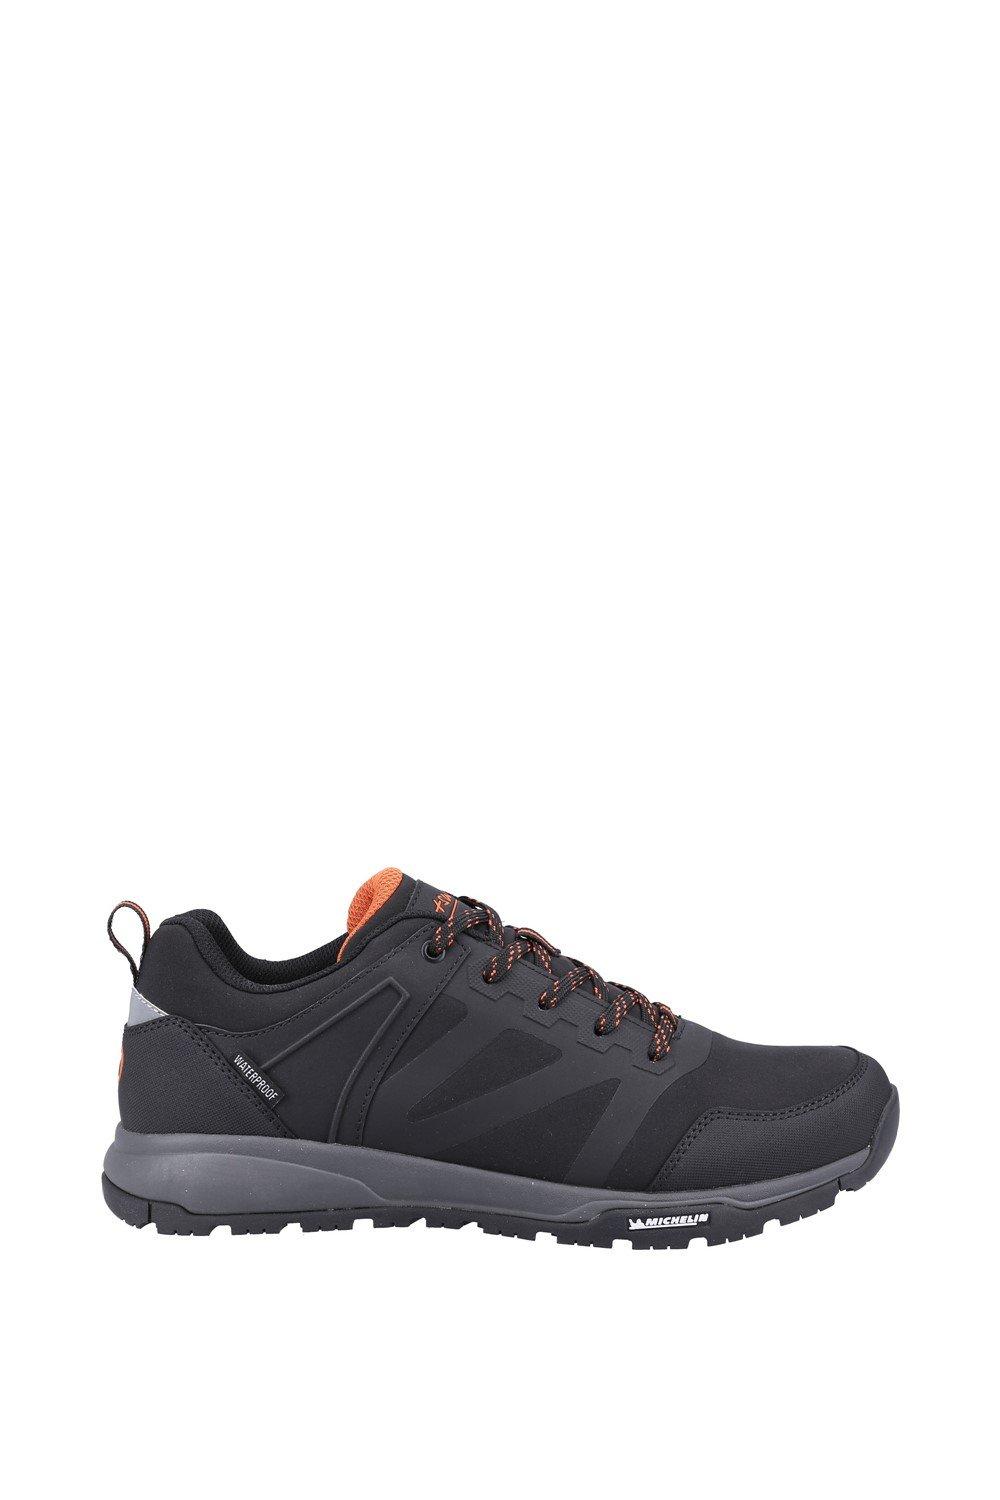 Мужские низкие ботинки Kingham Cotswold, черный free soldier тактические мужские альпинисткие спортивные дышащие кроссовки для пешего туризма